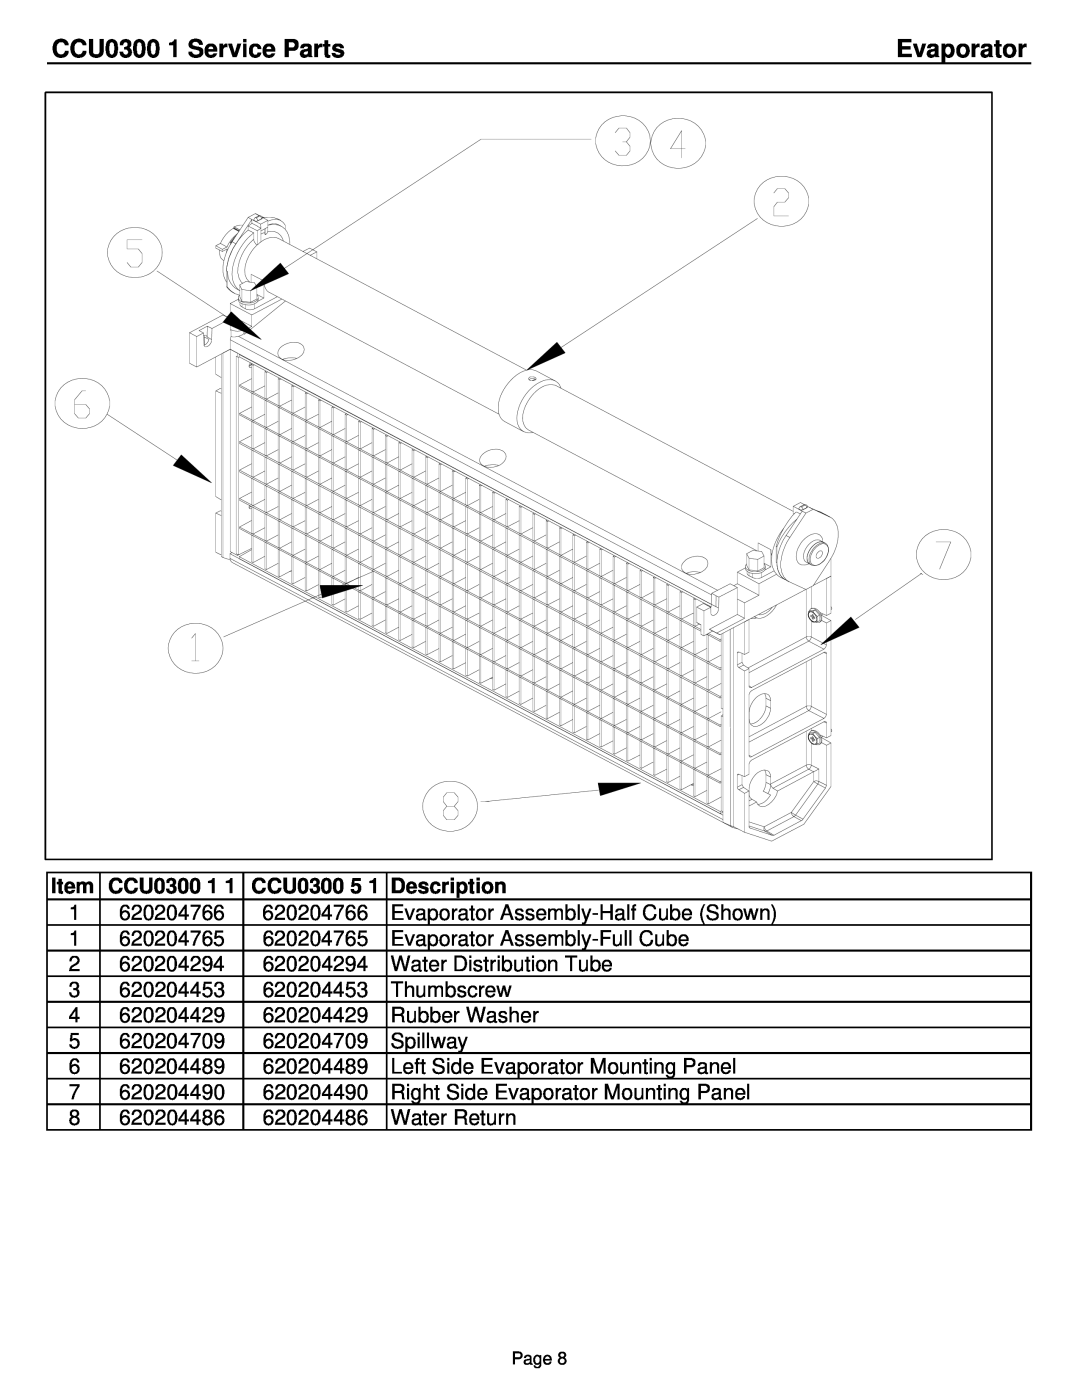 Cornelius manual Evaporator, CCU0300 1 Service Parts, Description 